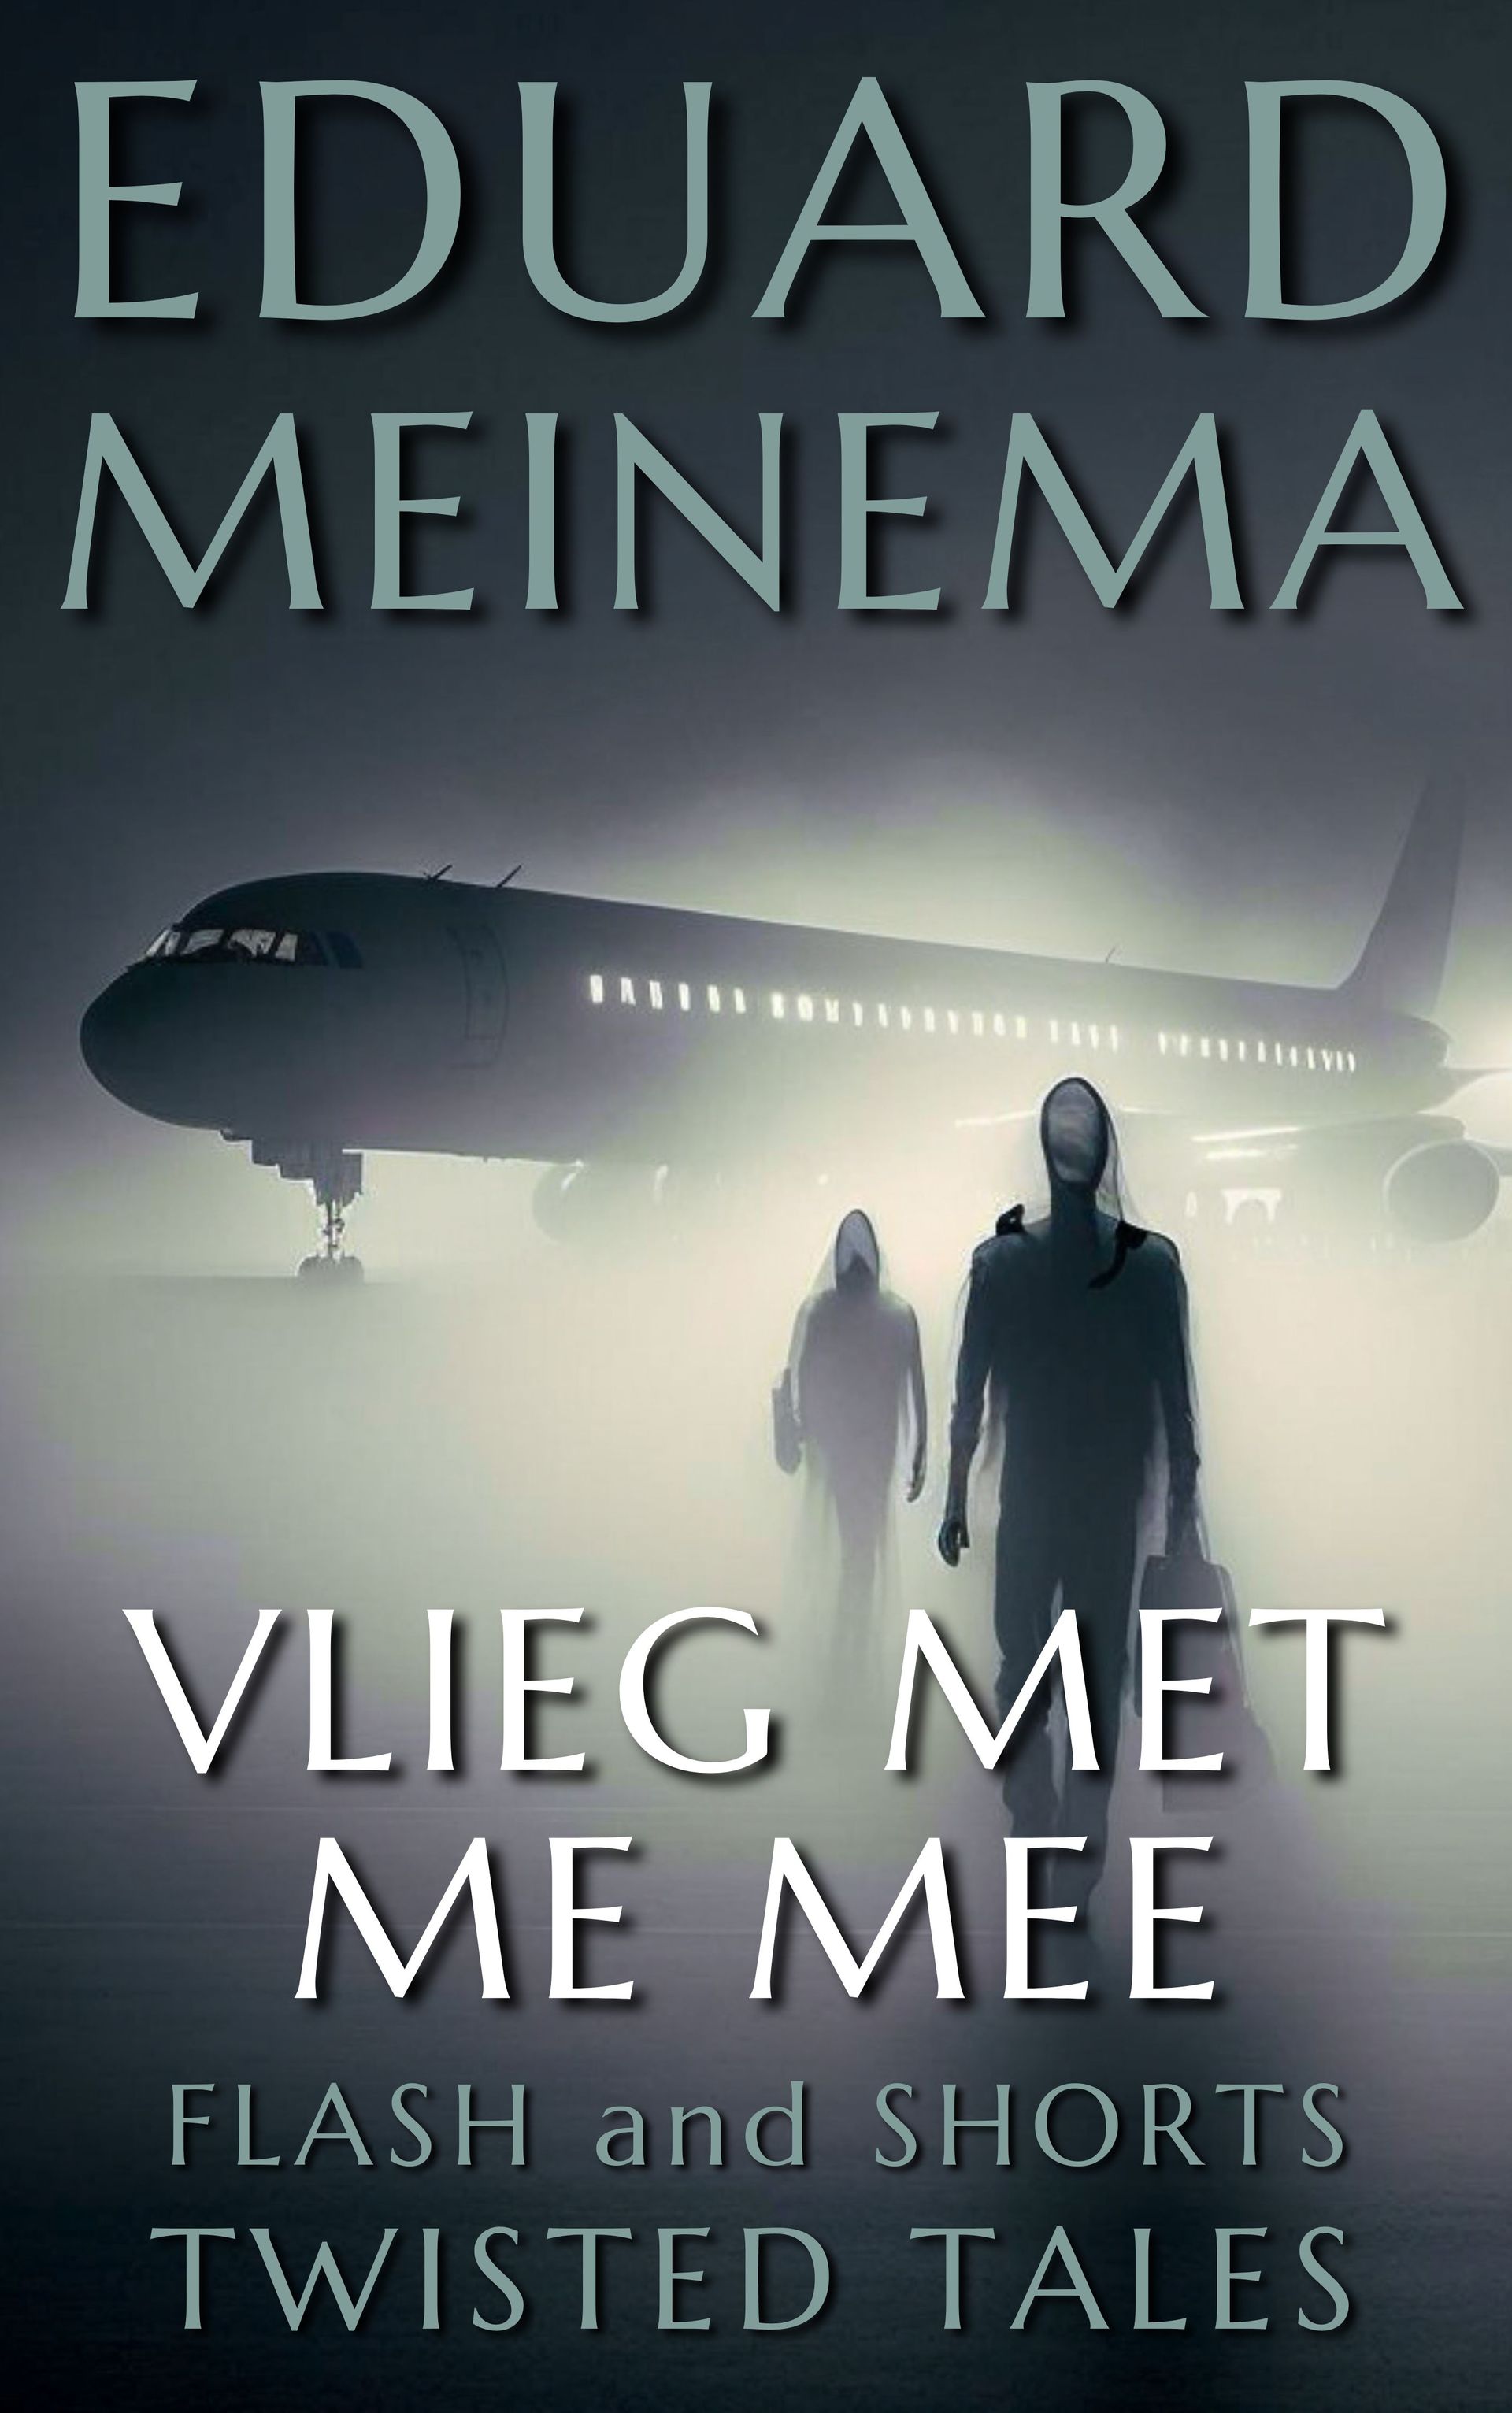 Vlieg met me mee, kort verhaal van Eduard Meinema.